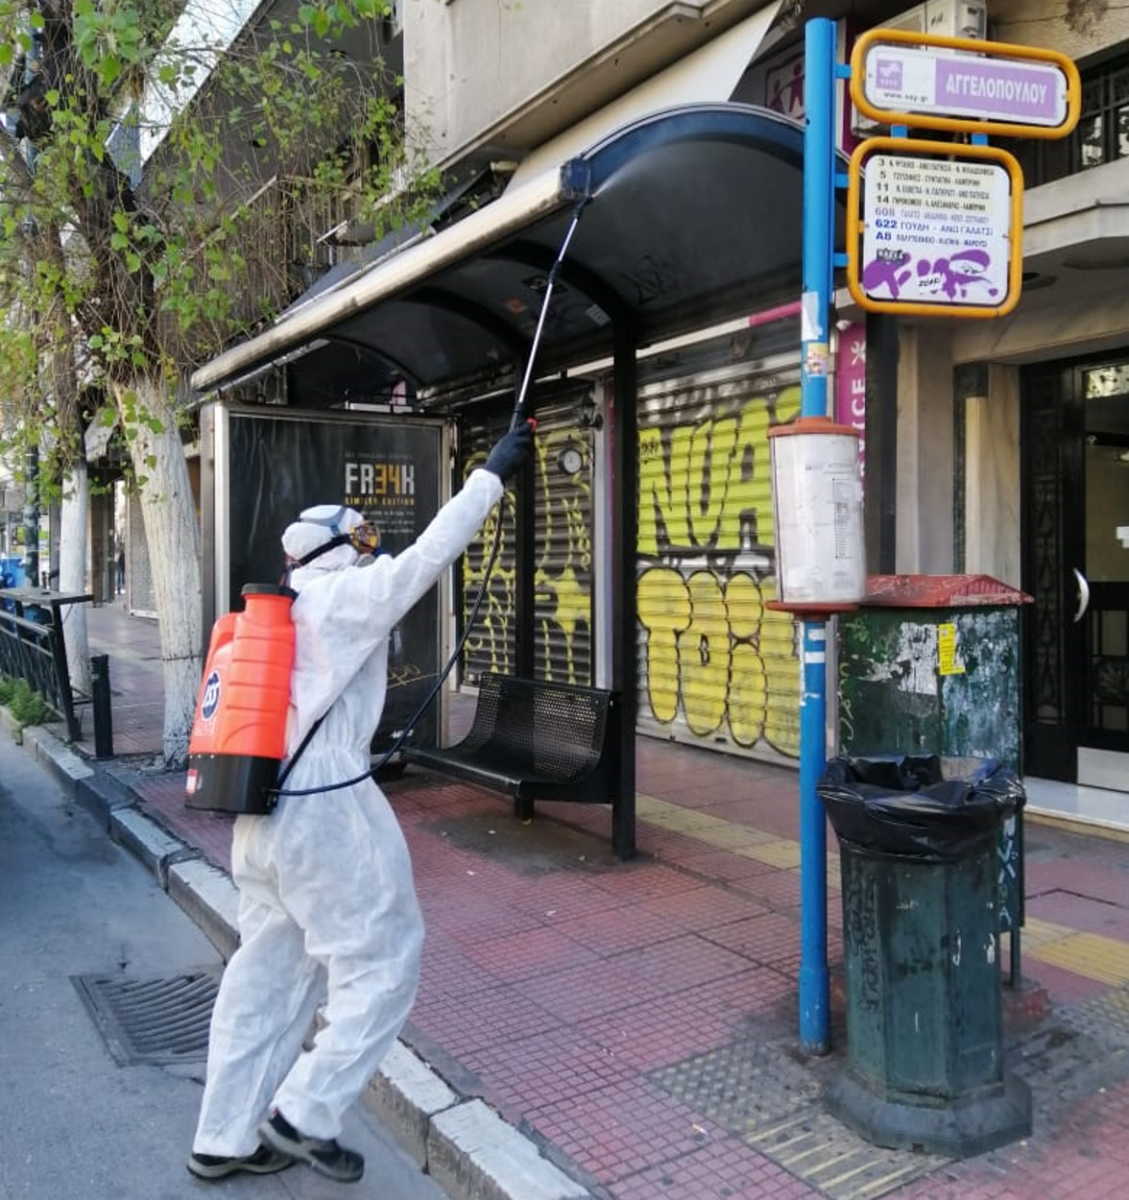 Κορονοϊός: Φωτογραφίες απολύμανσης σε στάσεις λεωφορείων και τρόλεϊ στην Αθήνα